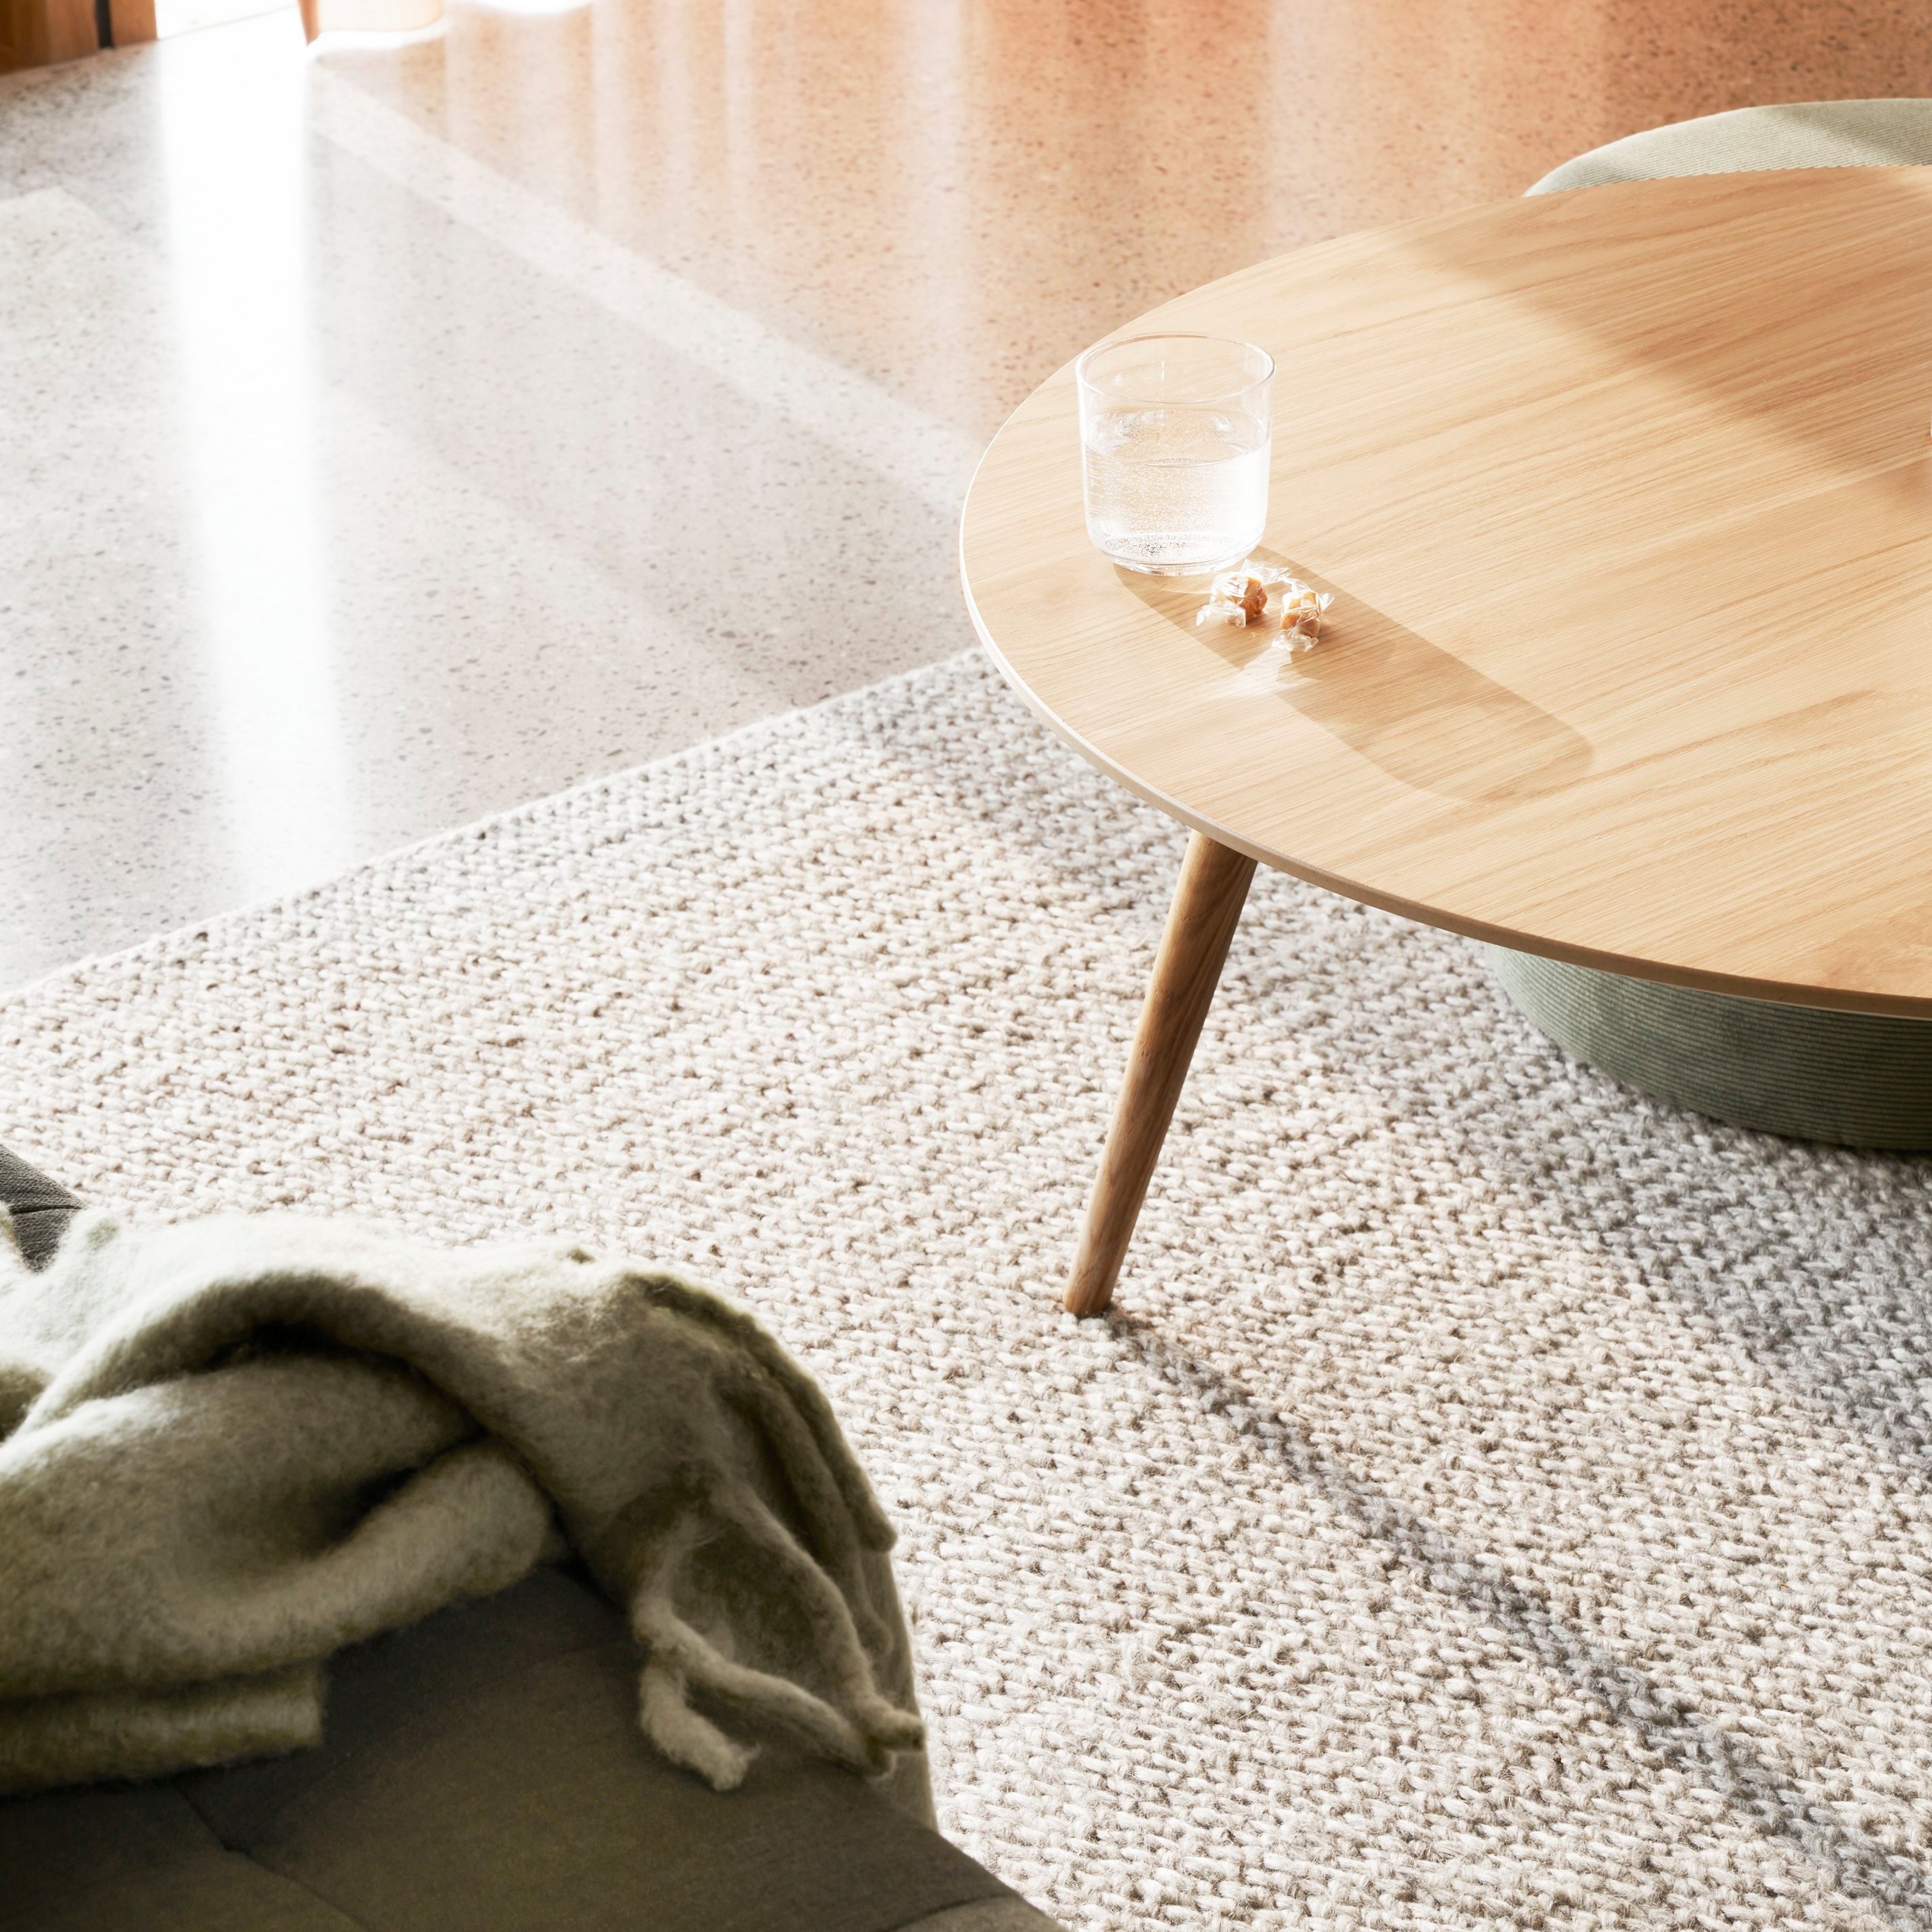 Texturovaný koberec s kulatým dřevěným stolem, sklenicí vody a měkkou přikrývkou ve slunečním světle.